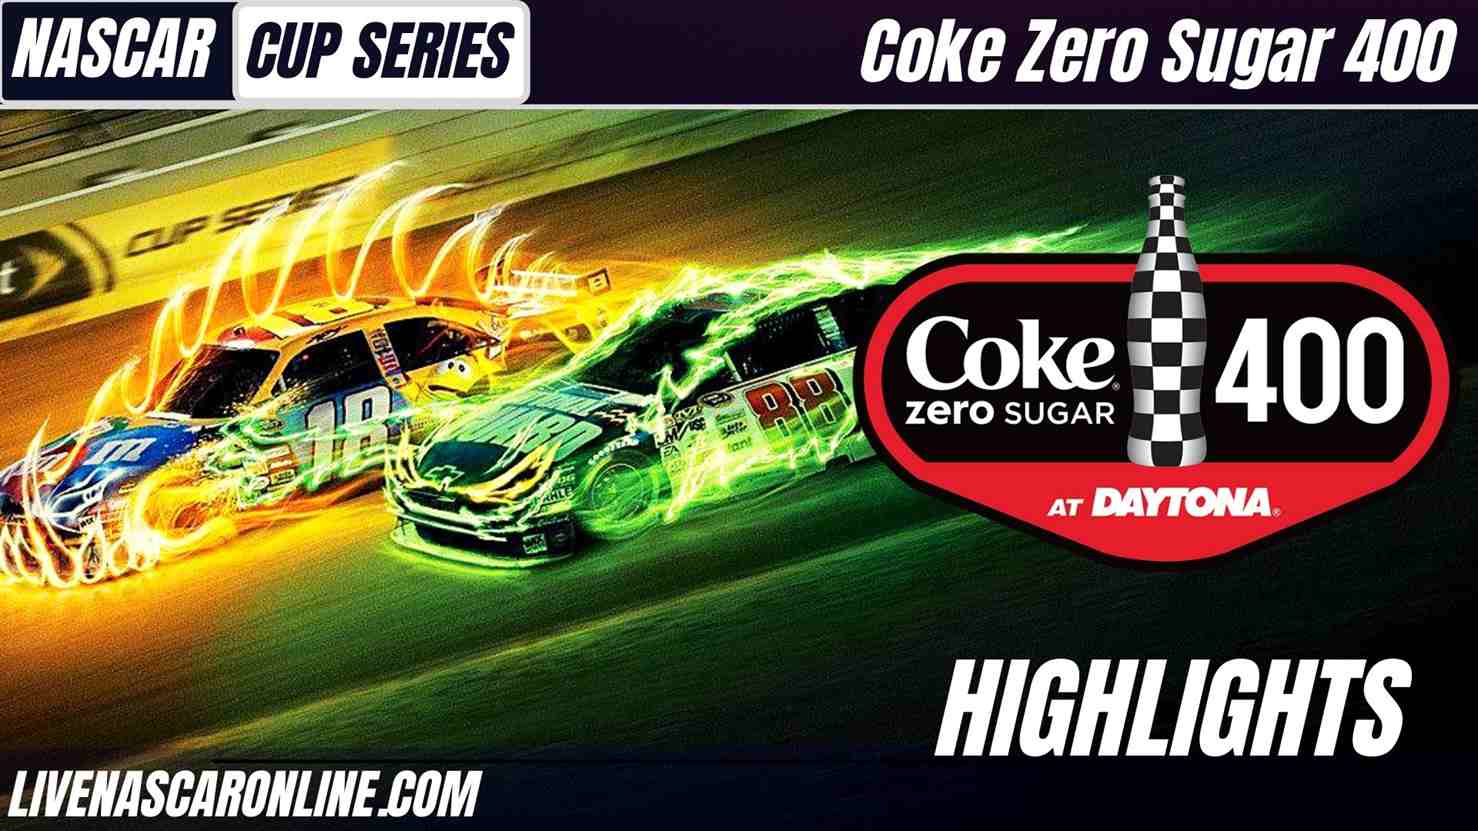 Coke Zero Sugar 400 Highlights 2021 Nascar Cup Series